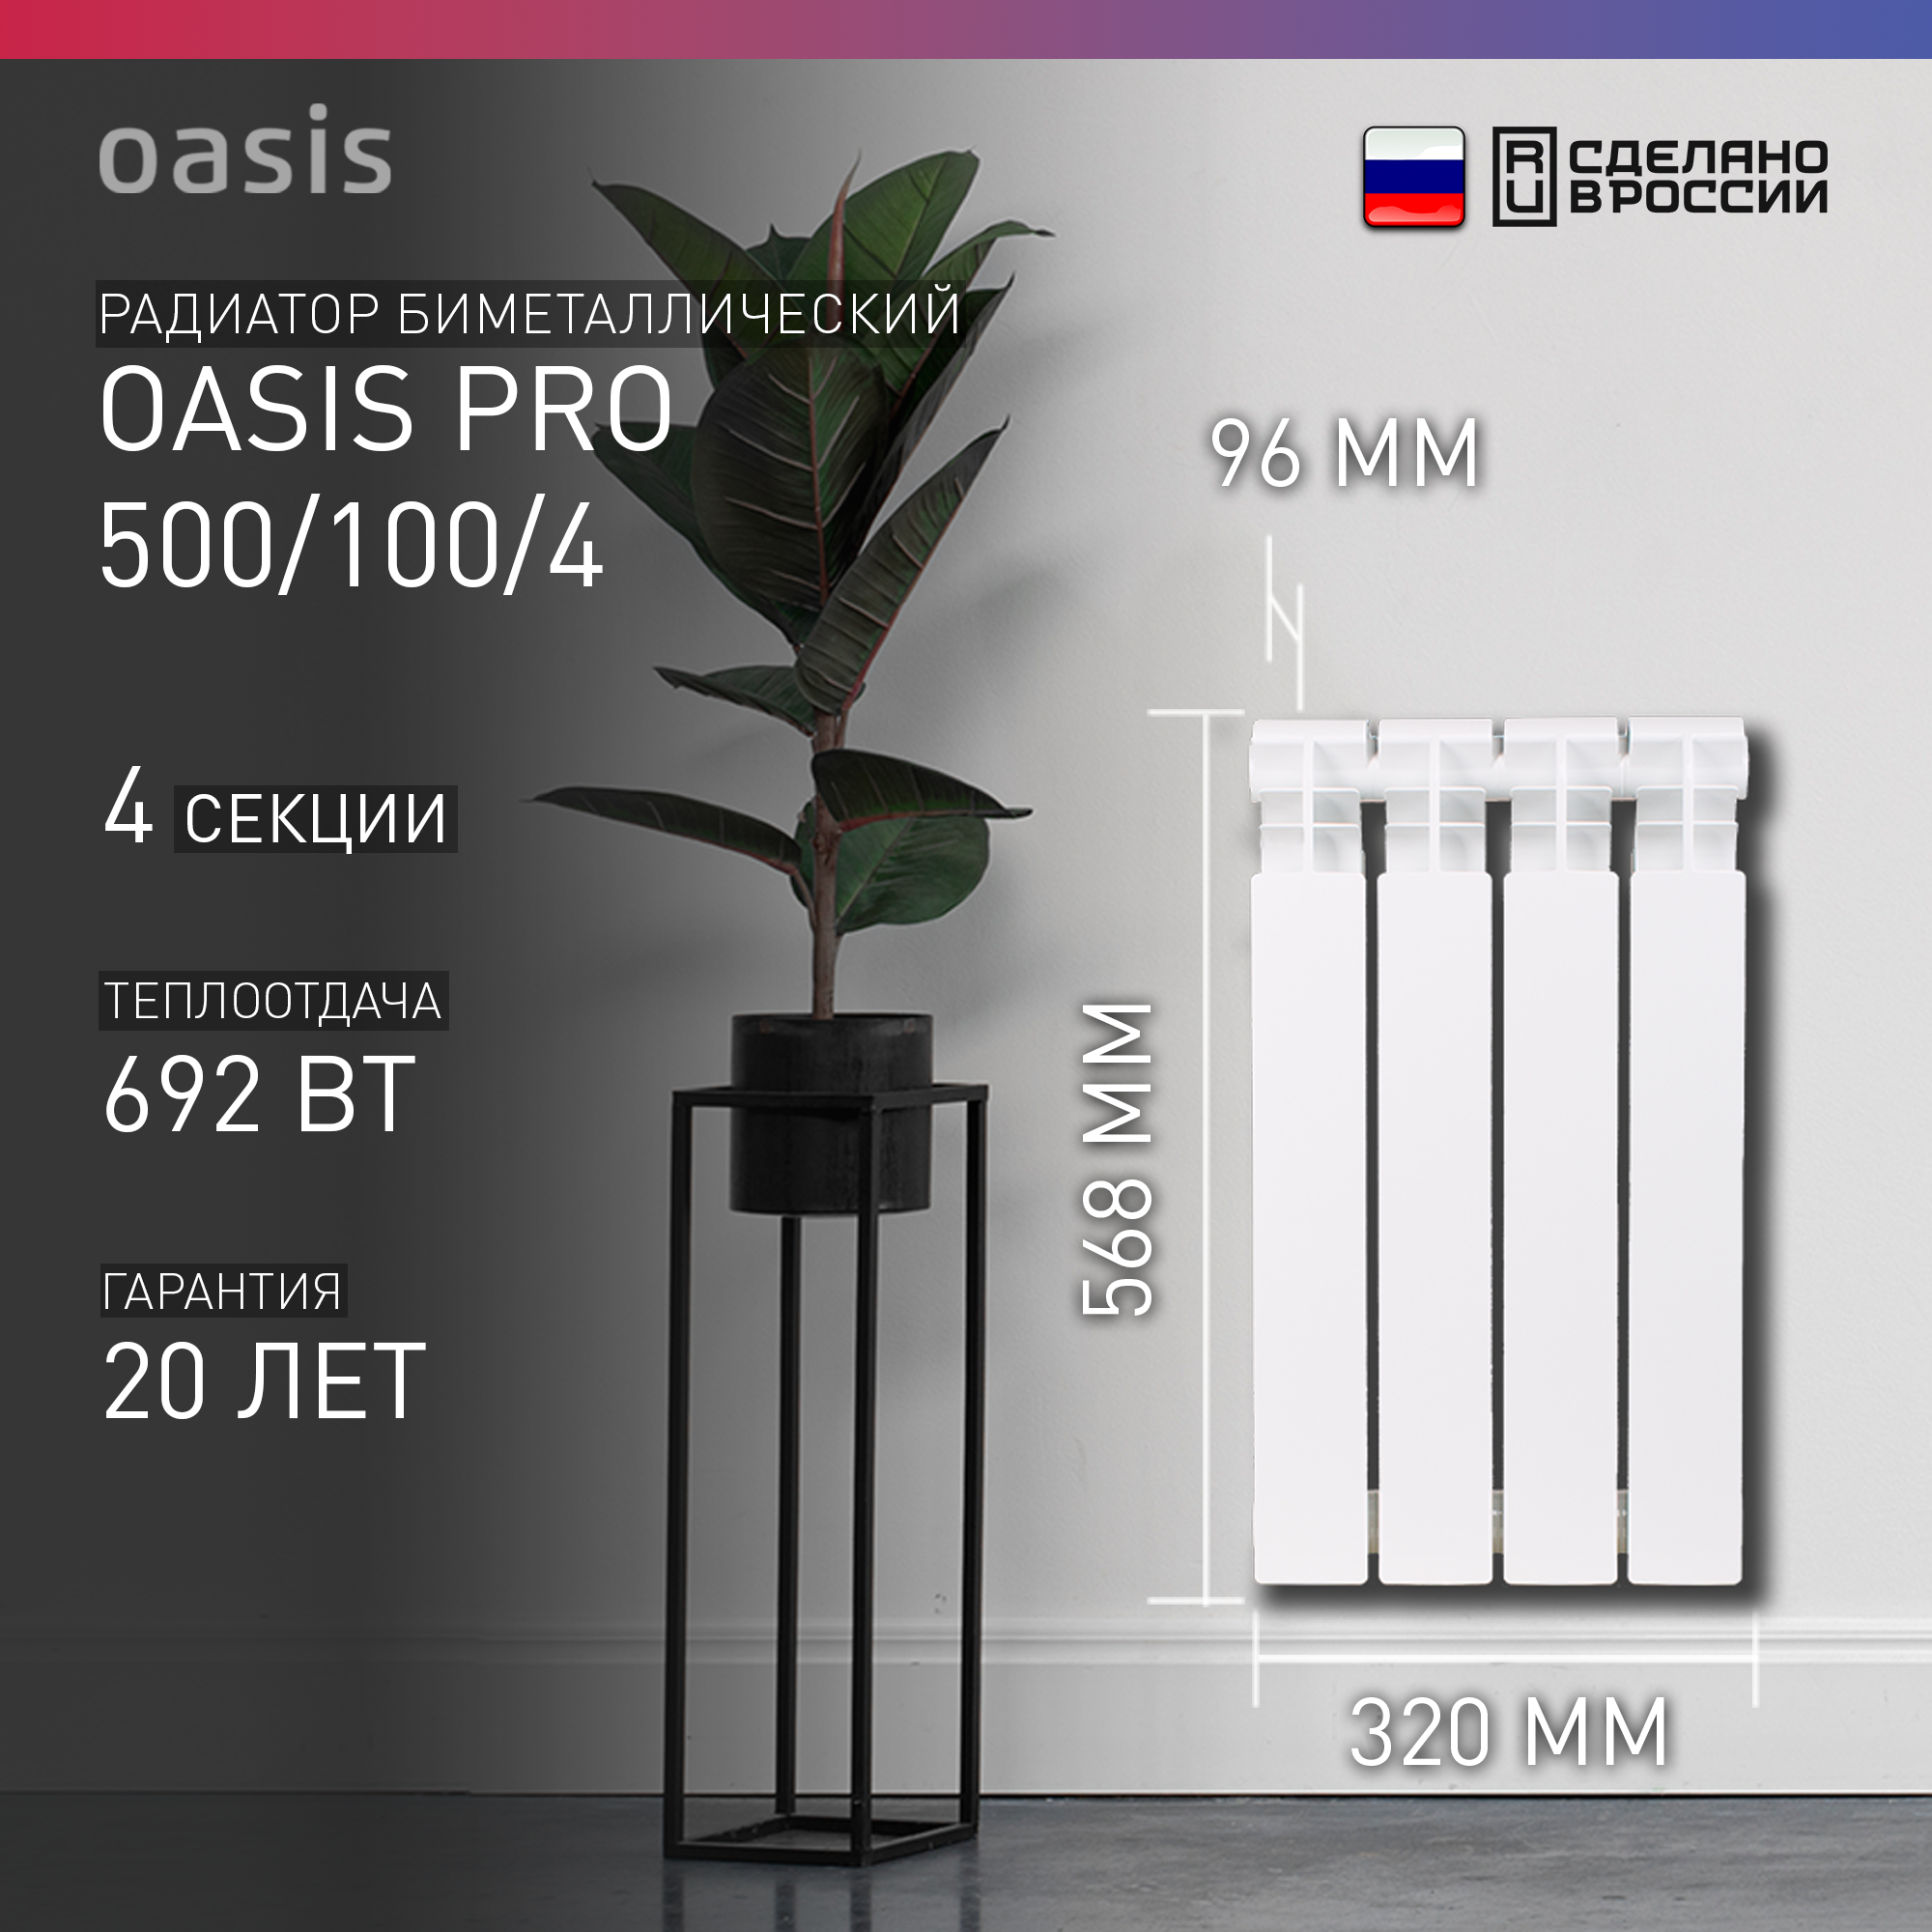 Радиатор биметаллический OASIS PRO 500/100/4 4 секций